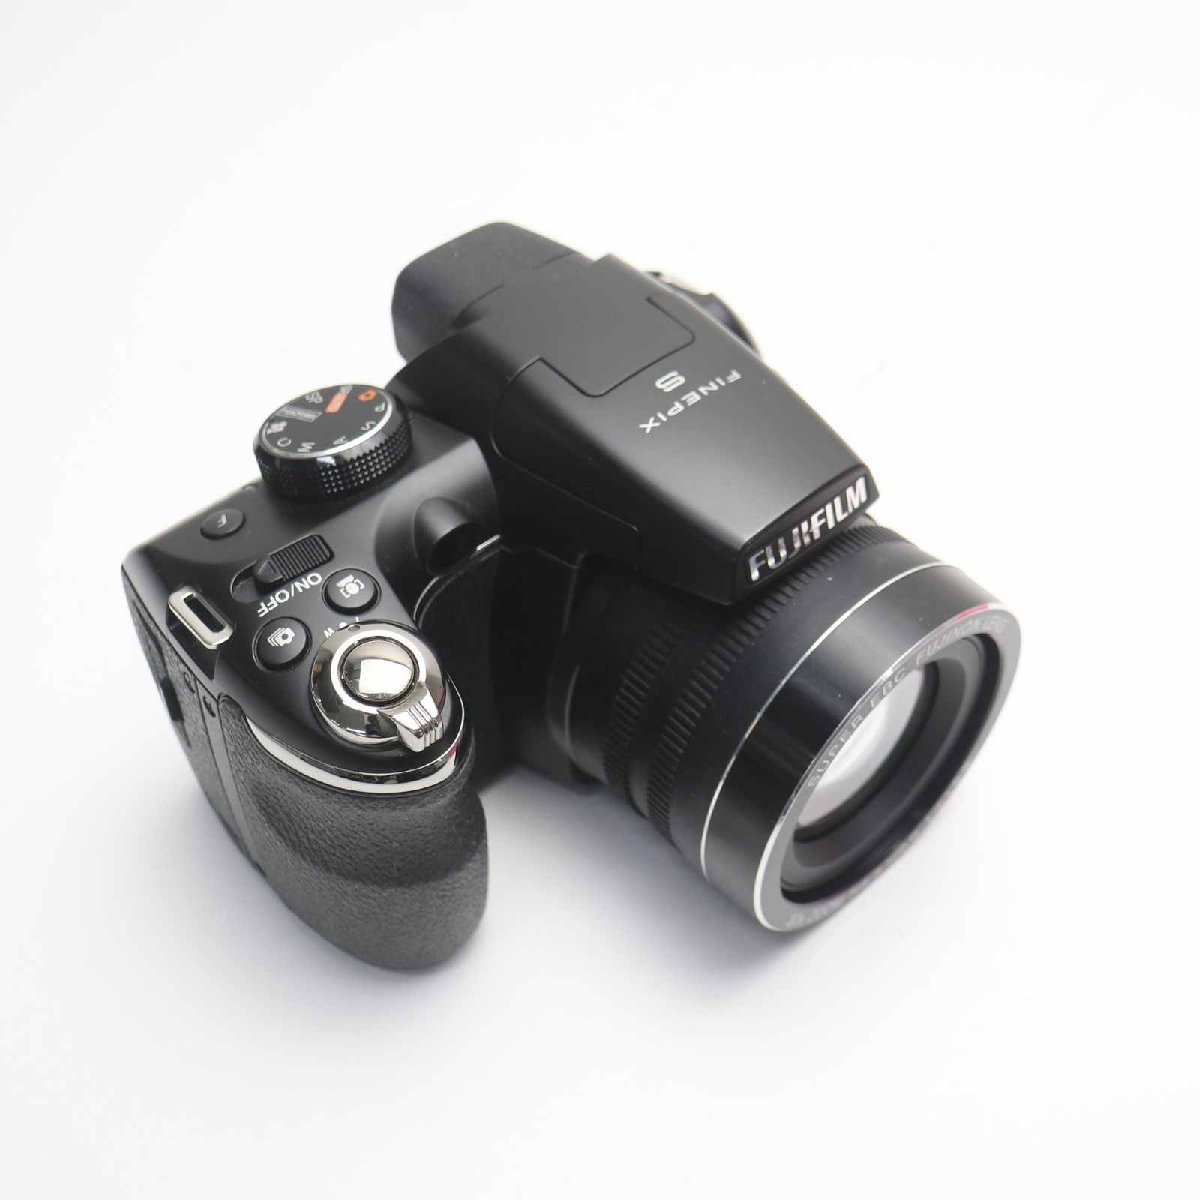 新品同様 FinePix S4500 ブラック 即日発送 デジカメ FUJIFILM デジタルカメラ 本体 あすつく 土日祝発送OK_画像1